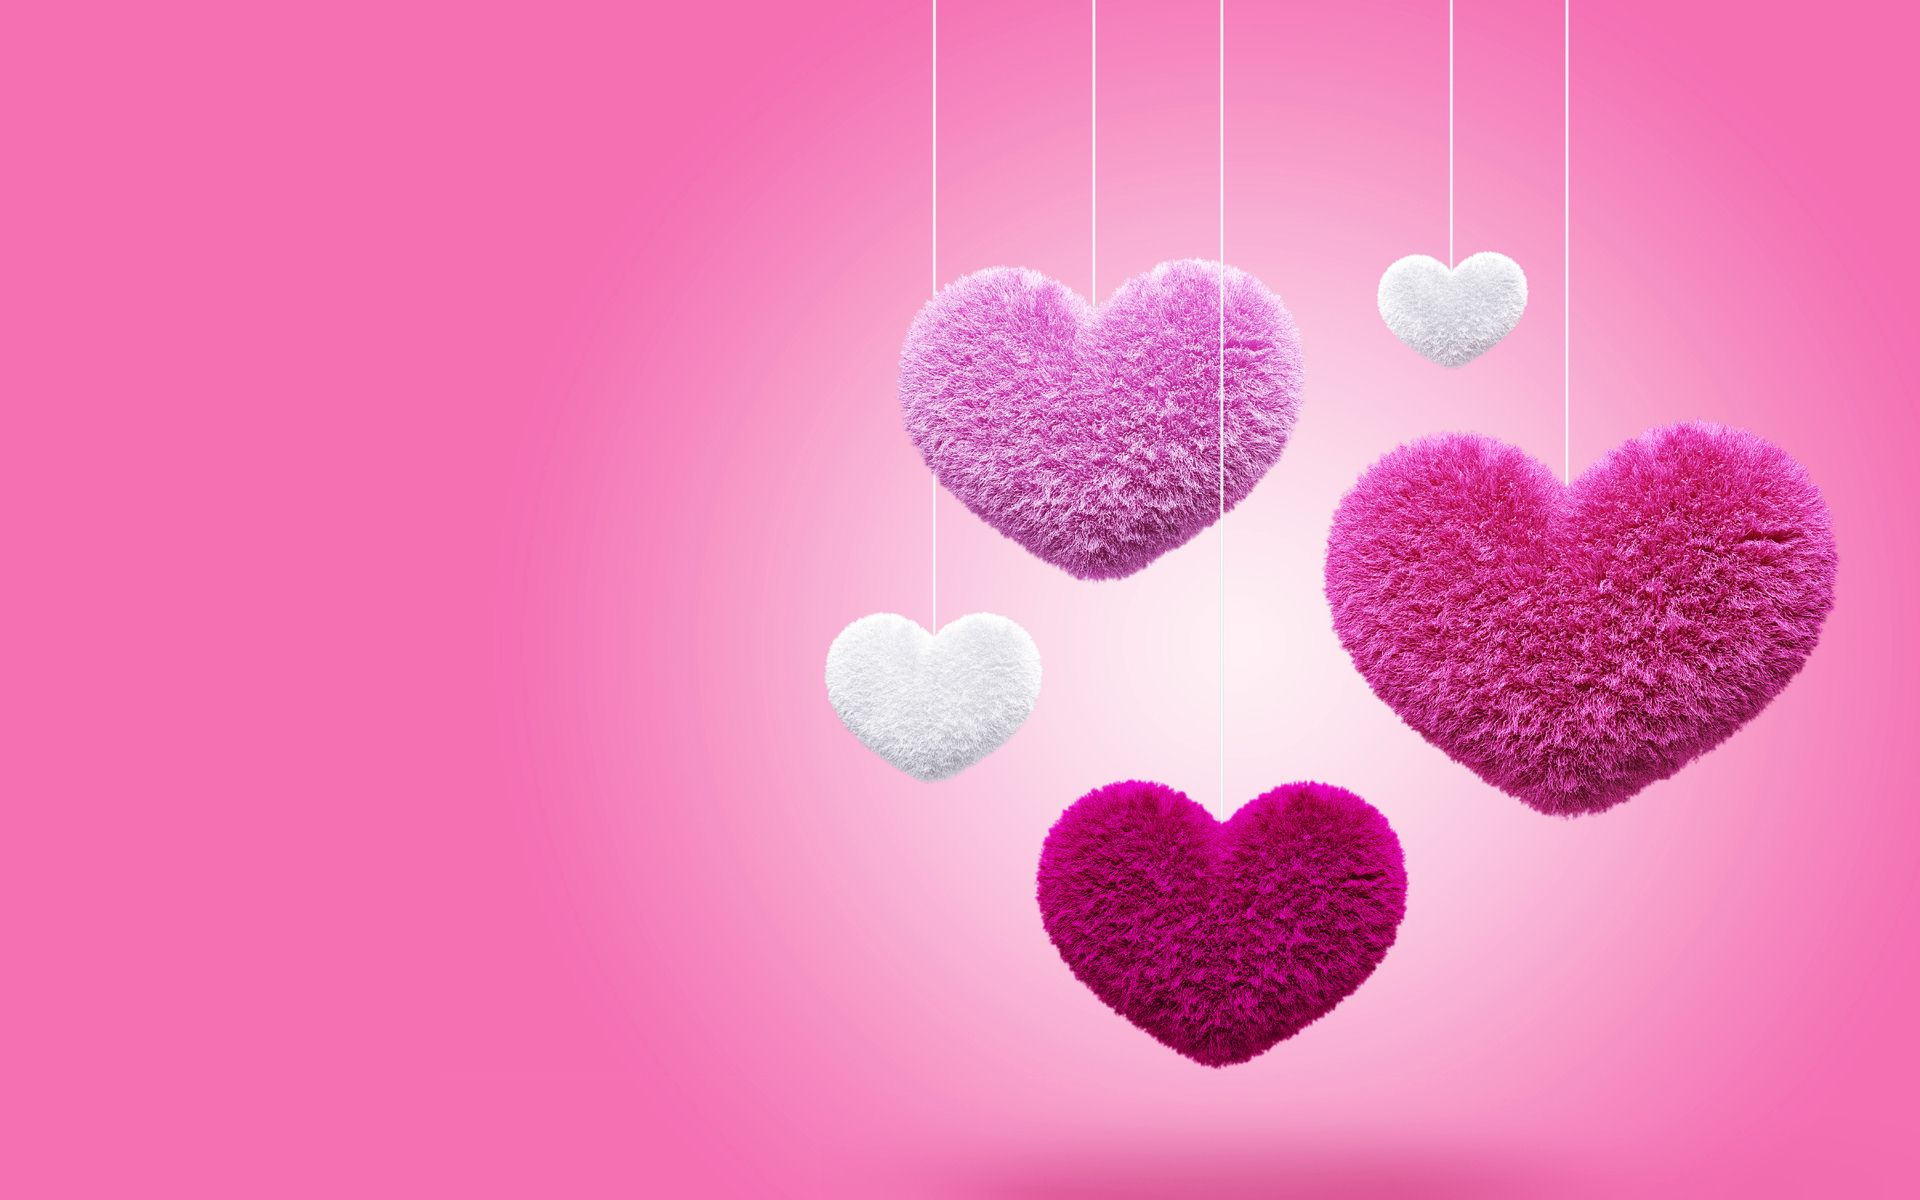 Hình nền hồng Love Pink miễn phí: Yêu cái nhìn ngọt ngào và đáng yêu? Hãy truy cập ngay để tải về hình nền Love Pink màu hồng tuyệt đẹp miễn phí cho thiết bị của bạn.